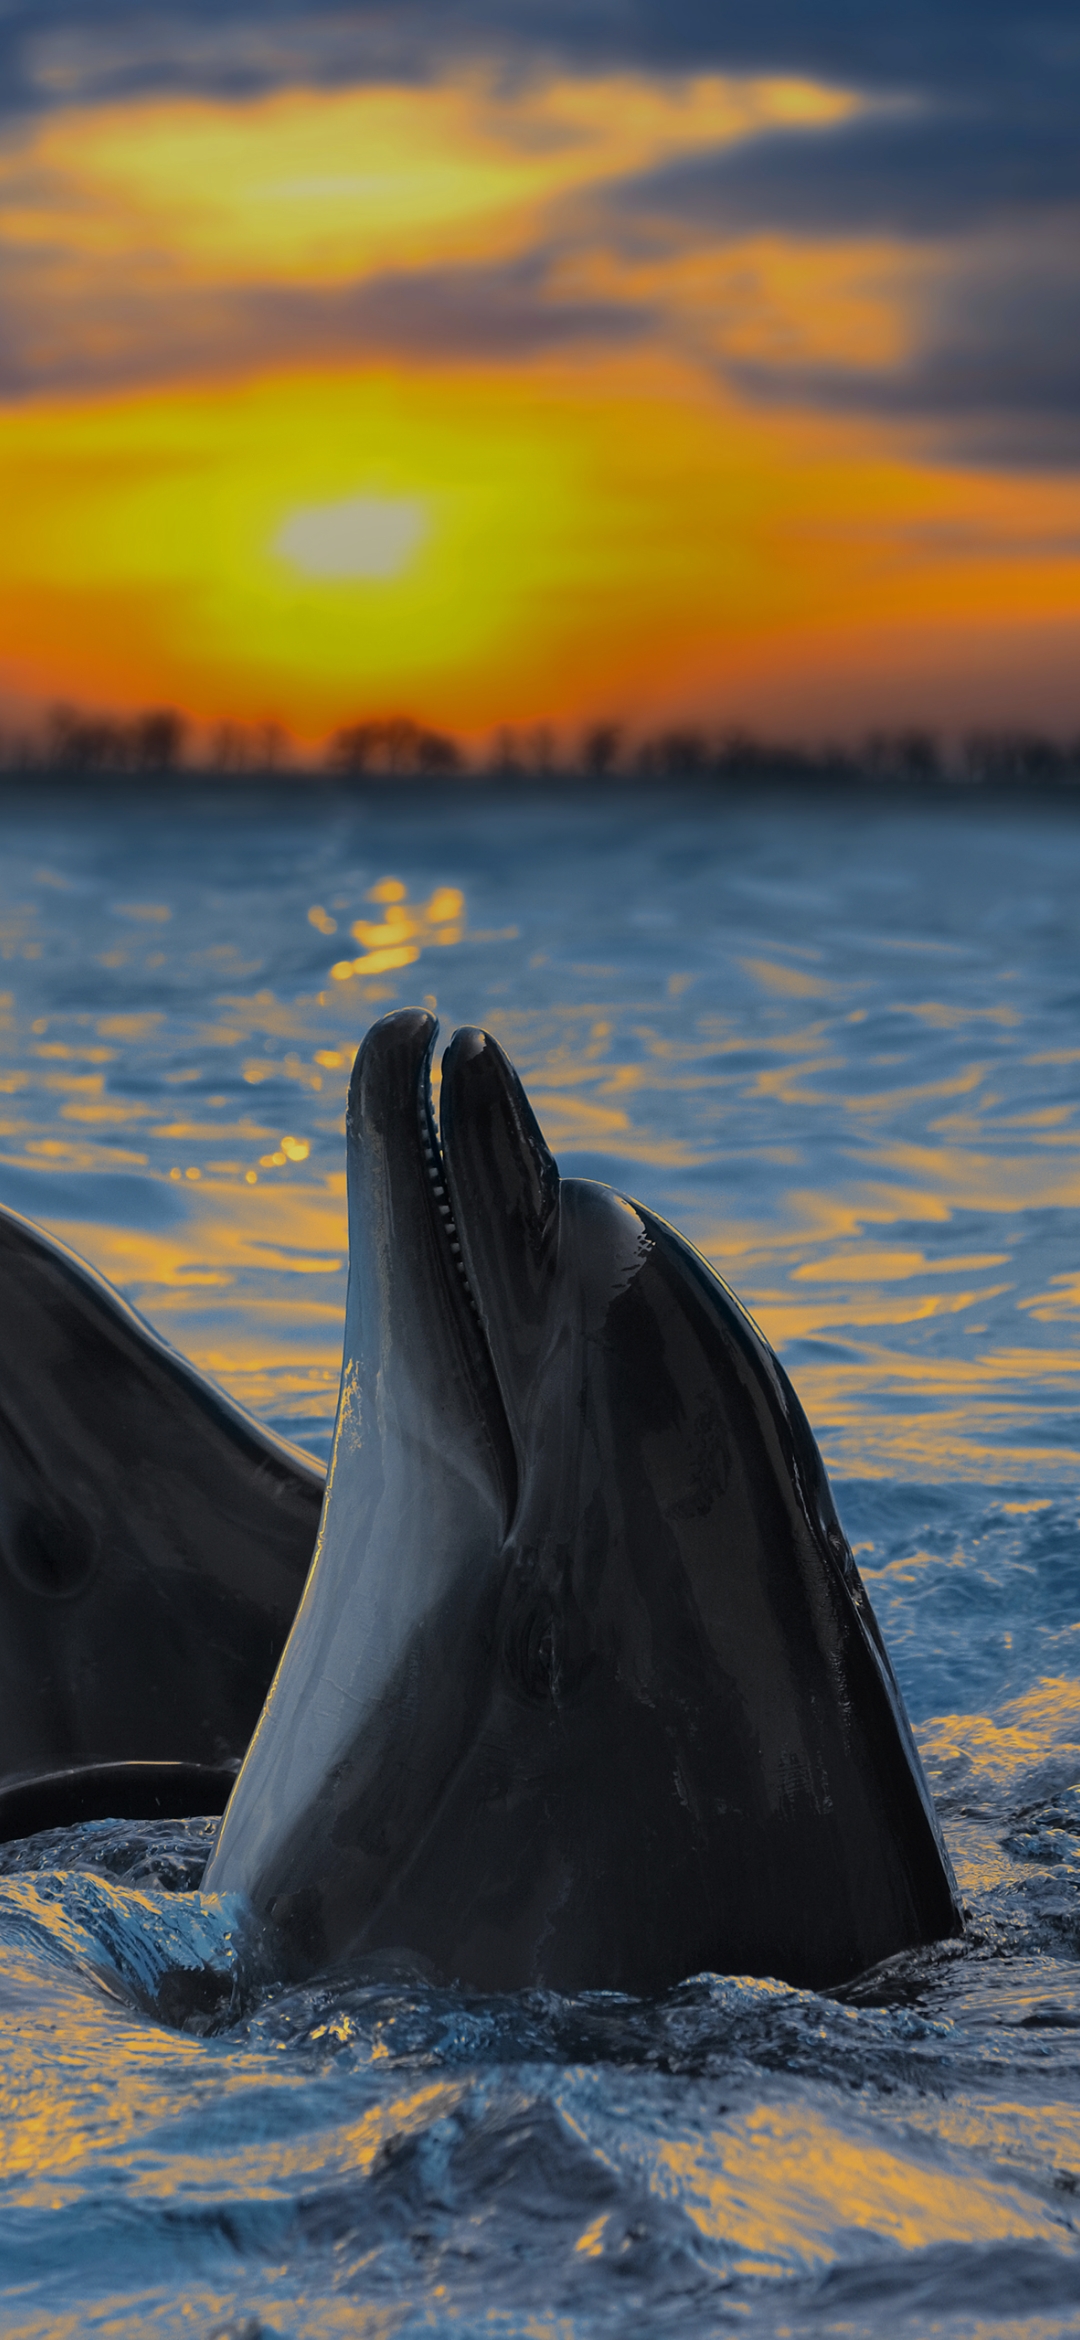 Dolphin in sea